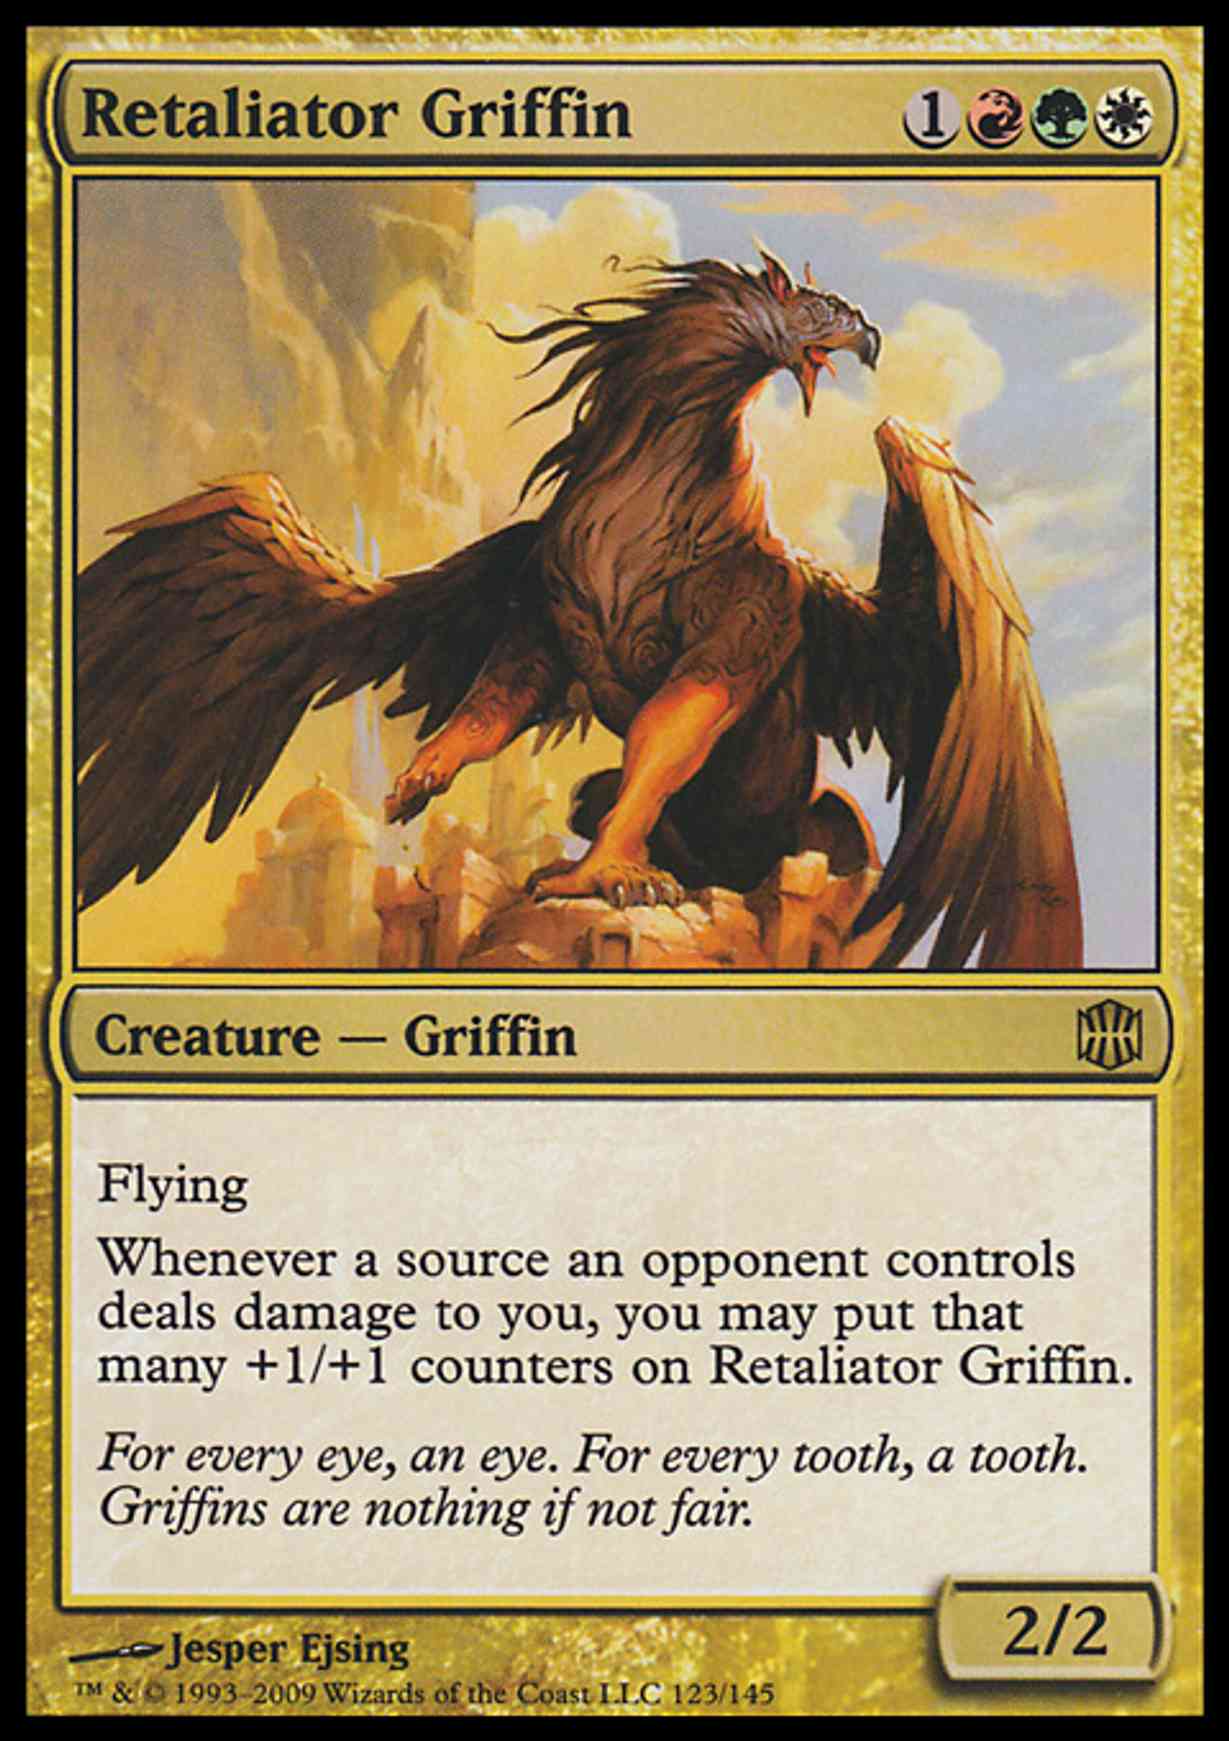 Retaliator Griffin magic card front